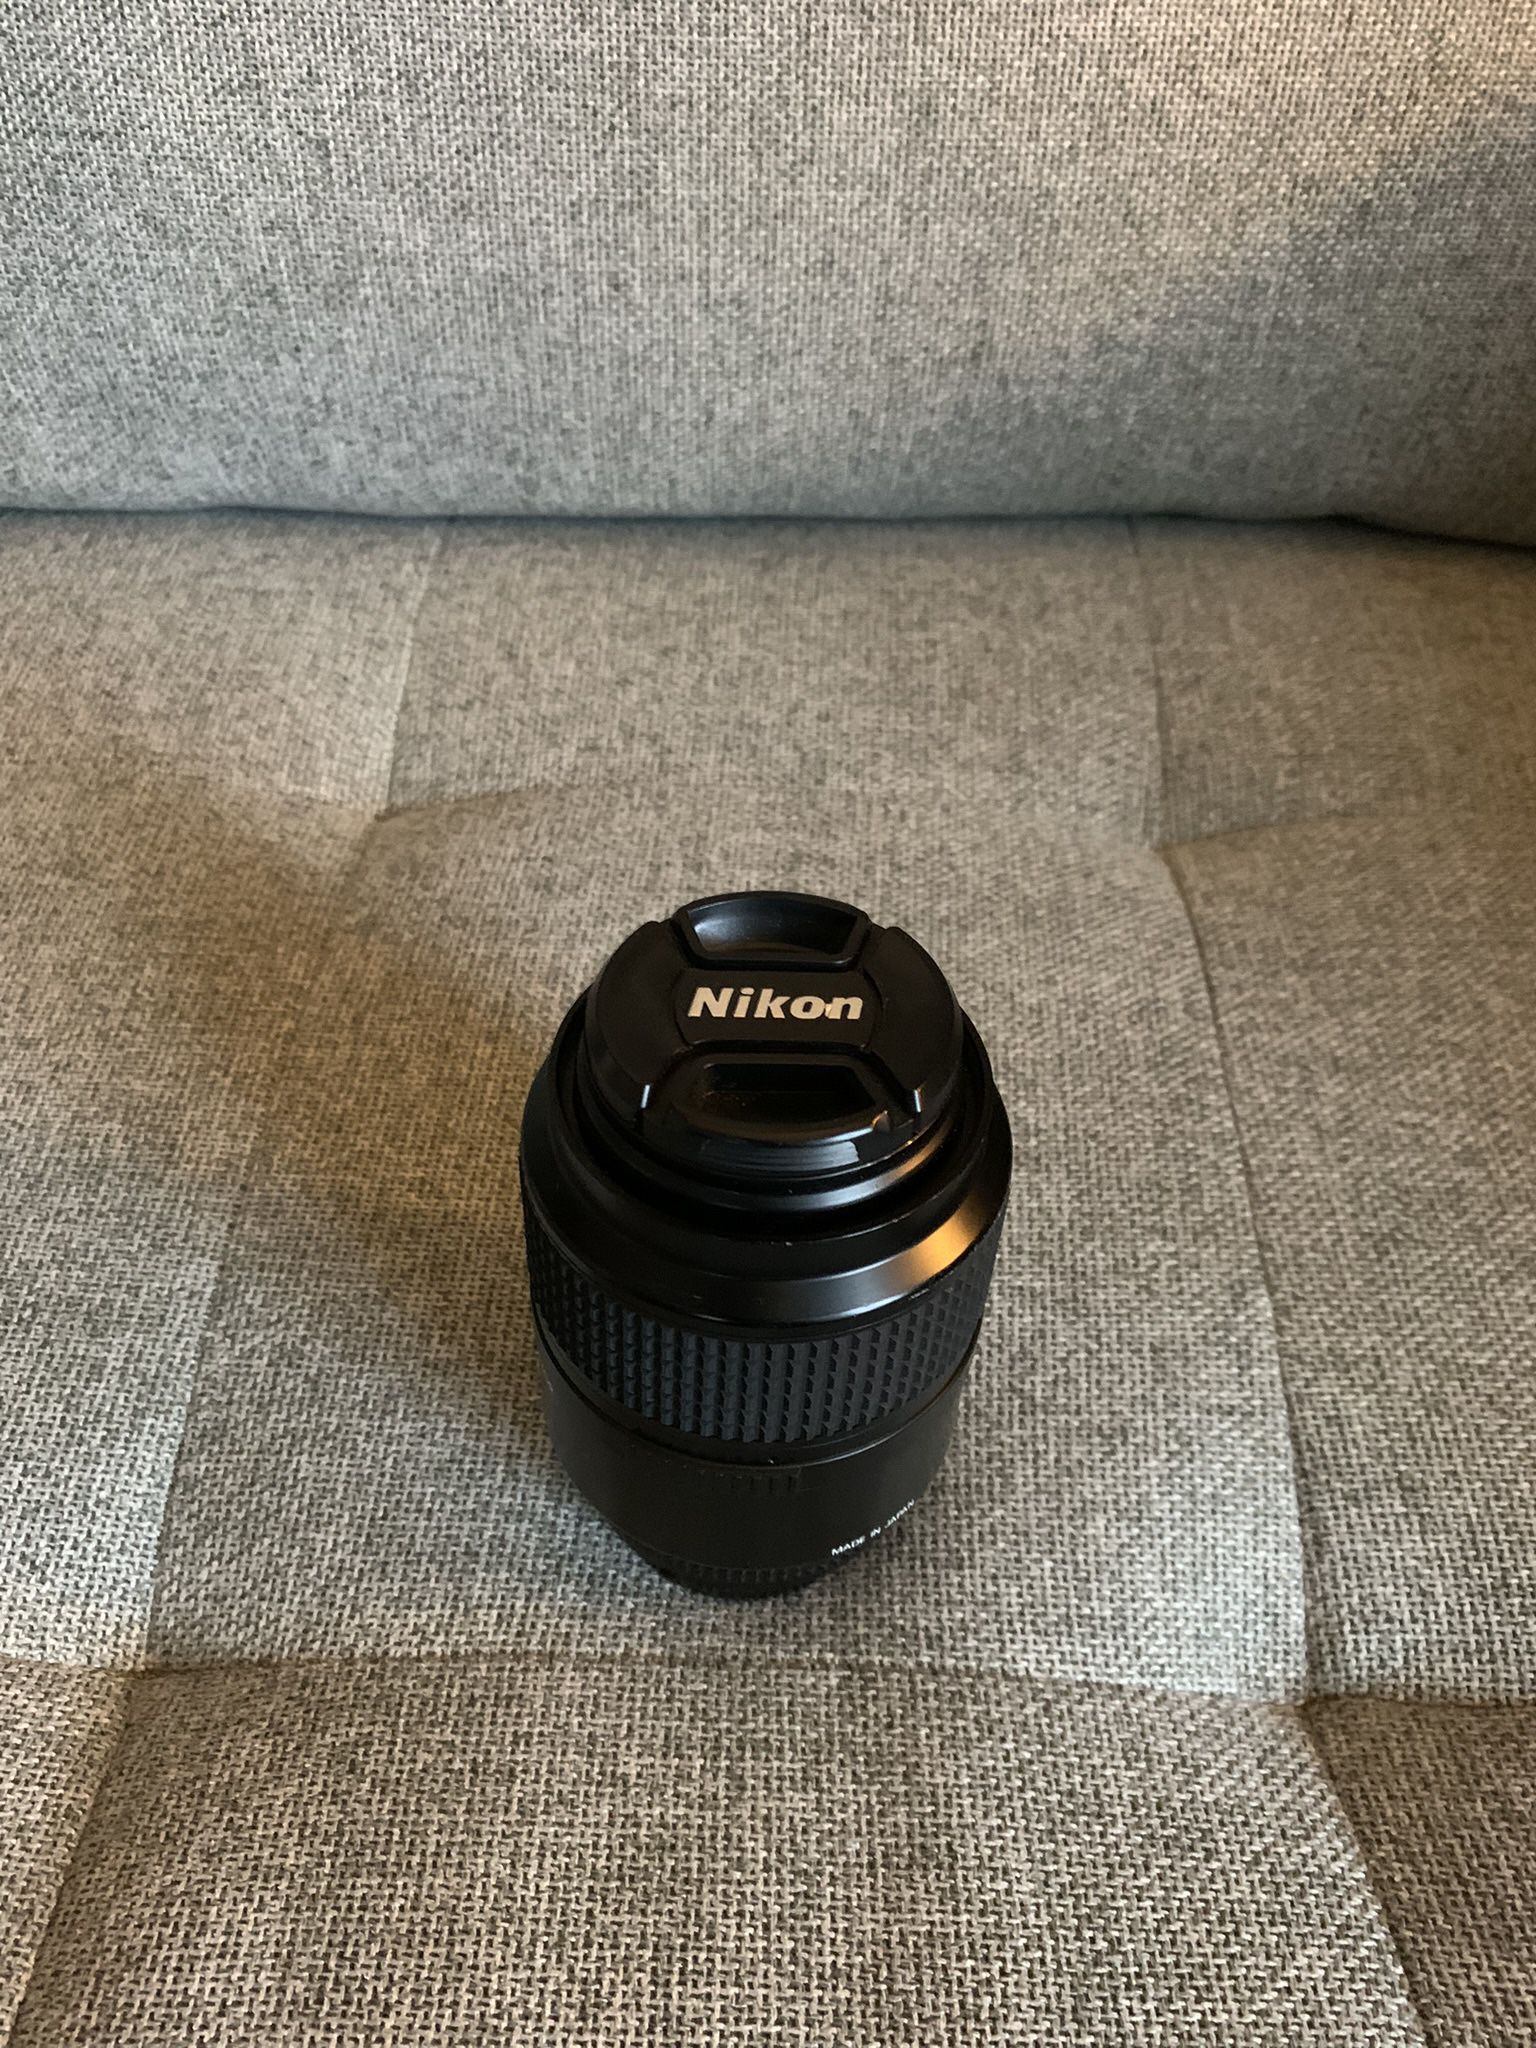 Nikon 105mm f/2.8D AF Micro-Nikkor Lens